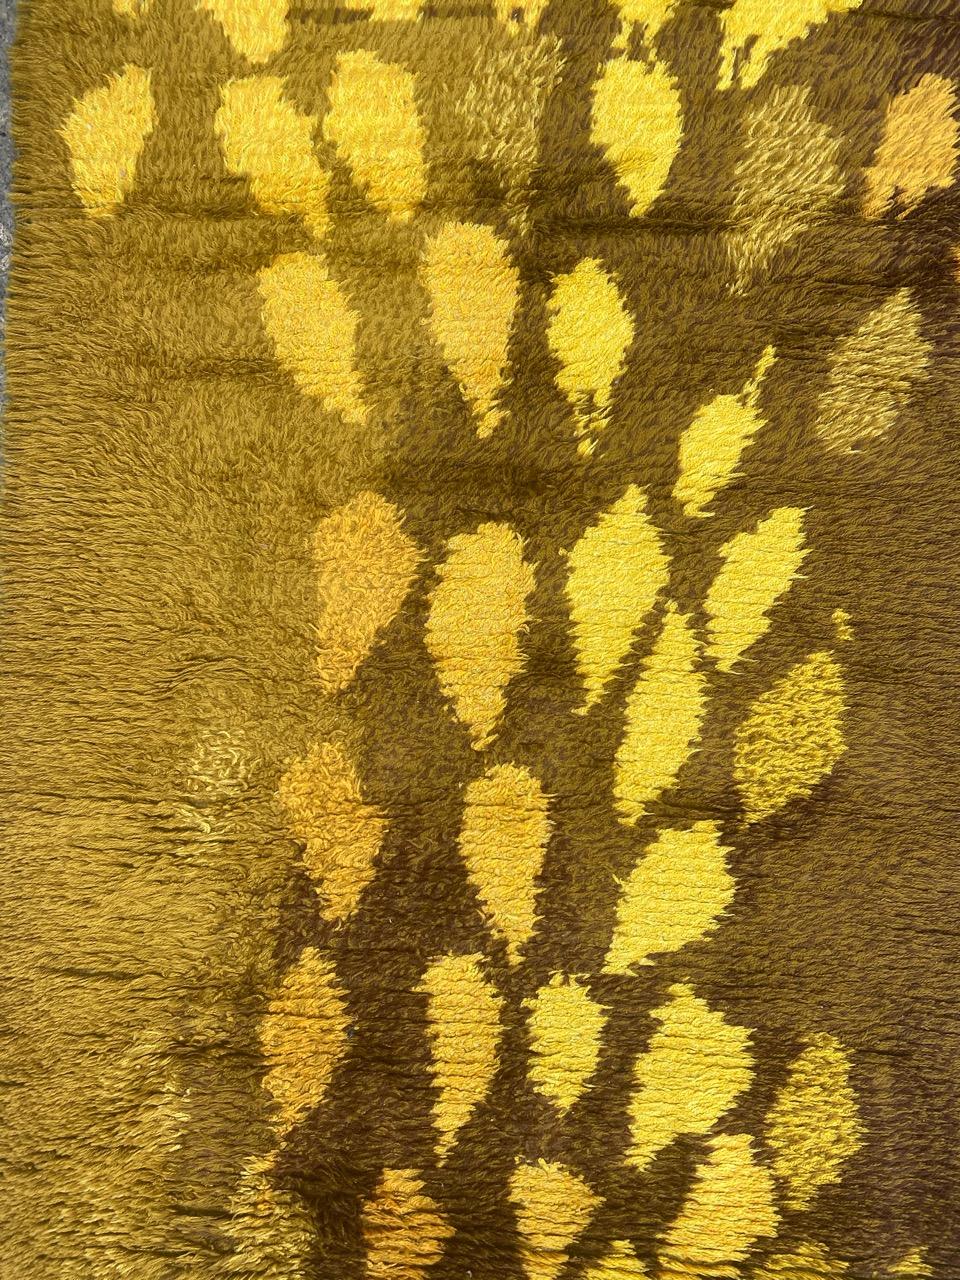 Joli tapis Scandinavian vintage avec un beau design moderne et une belle couleur de champ jaune, entièrement noué à la main avec du velours de laine sur une base de coton.

✨✨✨
